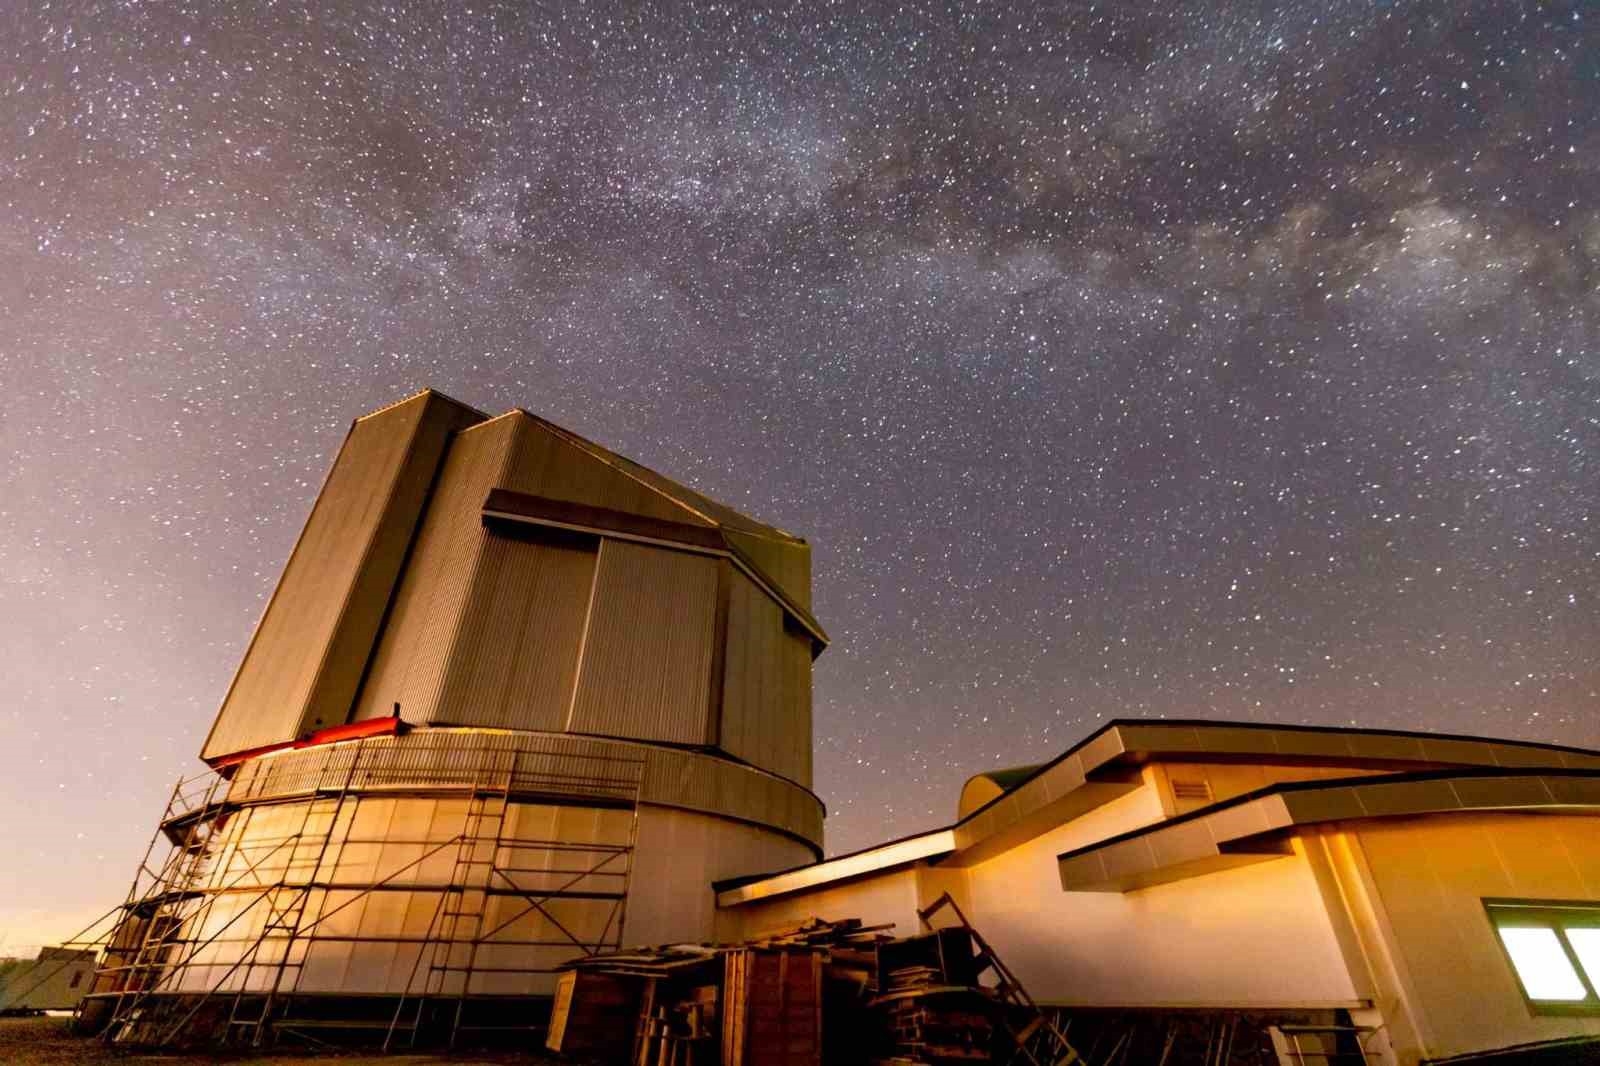 2023/09/aselsana-ait-ozel-teleskop-sistemi-dag-yerleskesinde-kurulacak-20230927AW03-4.jpg